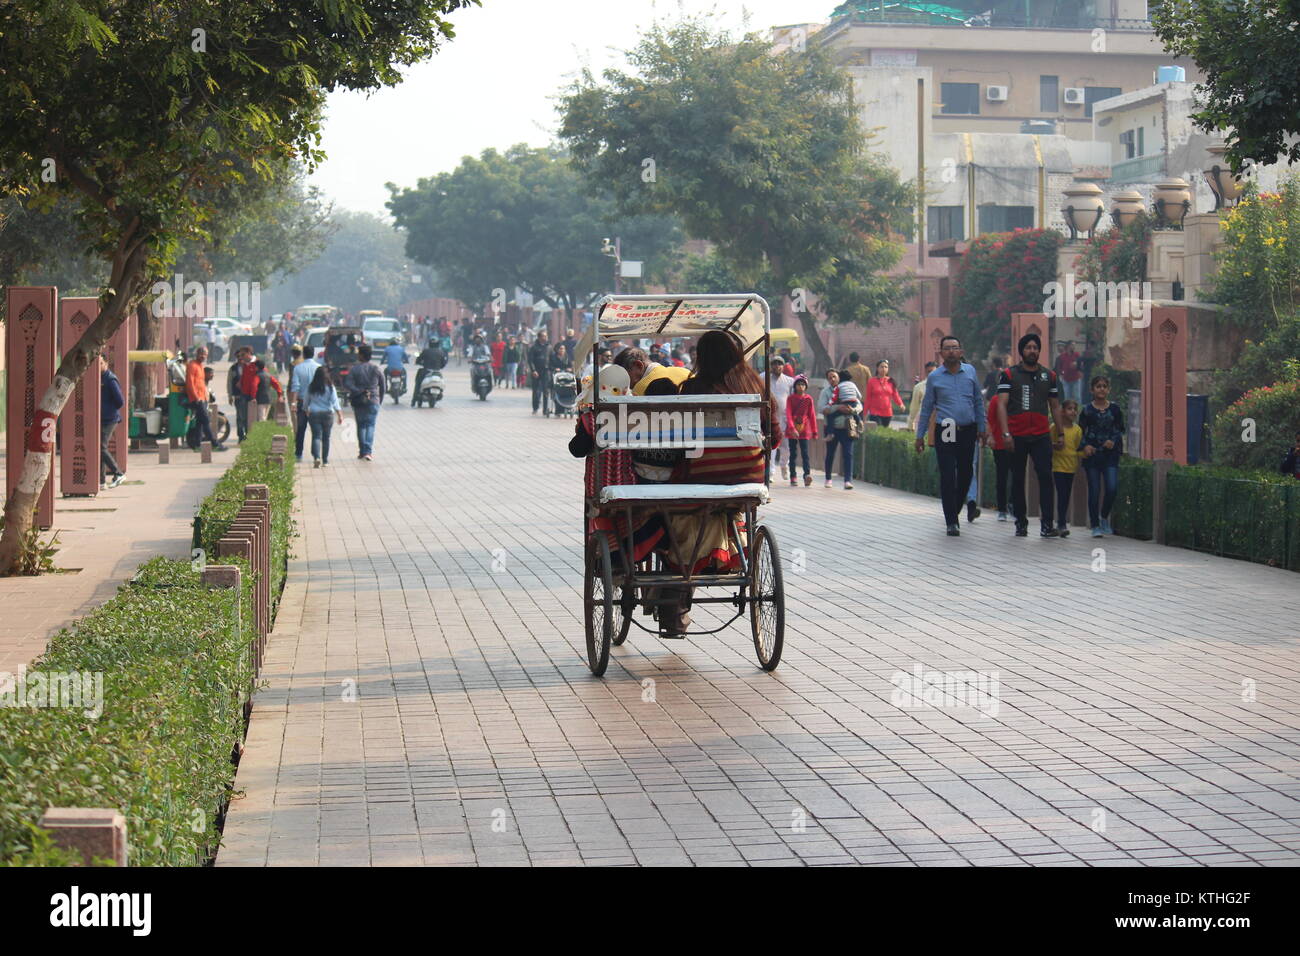 Cycle rickshaw mit Passagieren in Richtung Shilpgram von Taj Mahal von Taj East Gate Road, Agra. Touristen, die in Richtung Taj Mahal sind ebenfalls sichtbar. Stockfoto